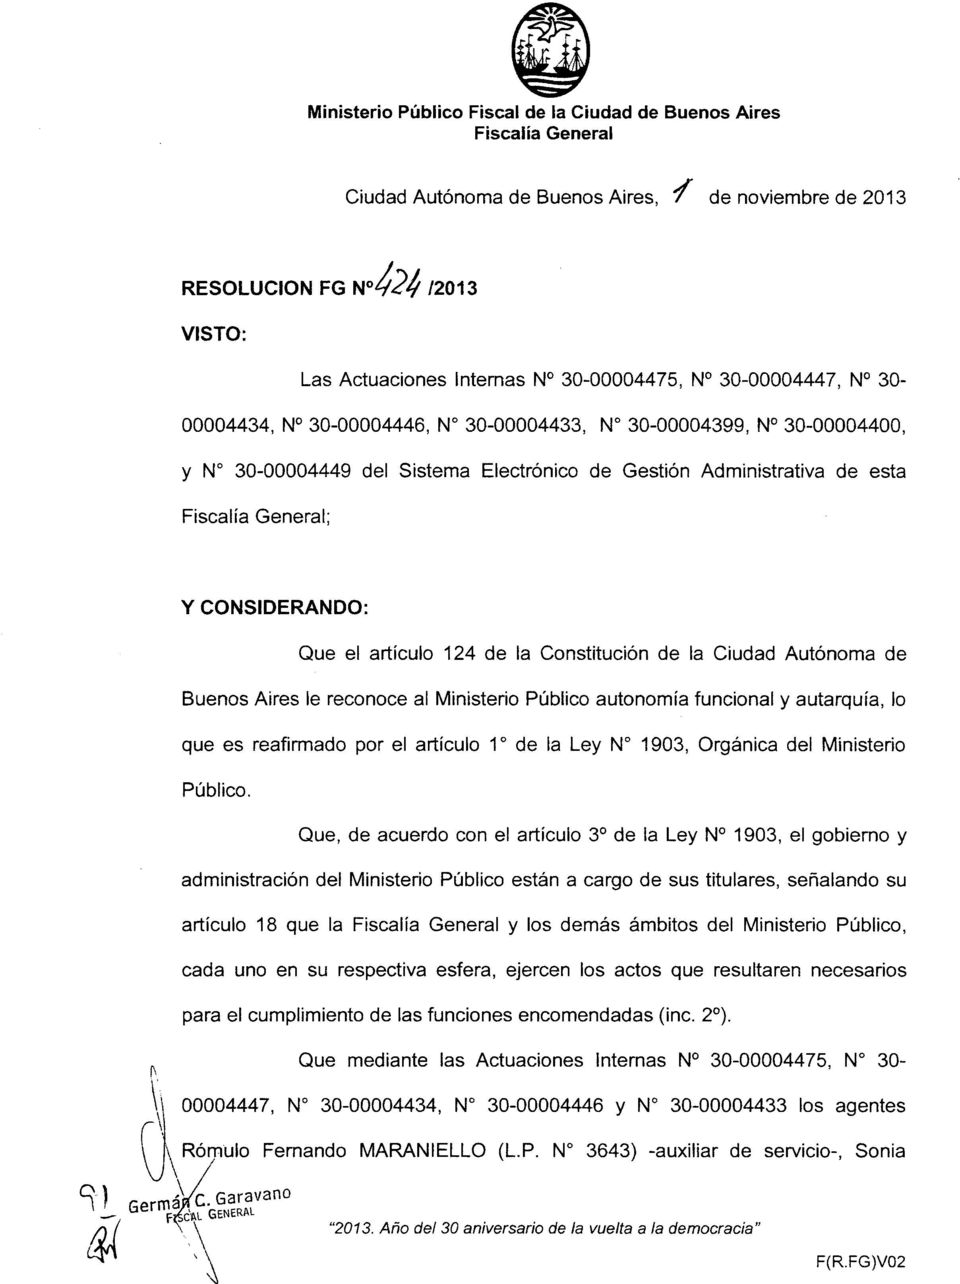 CONSIDERANDO: Que el articulo 124 de la Constituci6n de la Ciudad Aut6noma de Buenos Aires Ie reconoce al Ministerio Publico autonomia funcional y autarquia, 10 que es reafirmado par el articulo 1 de